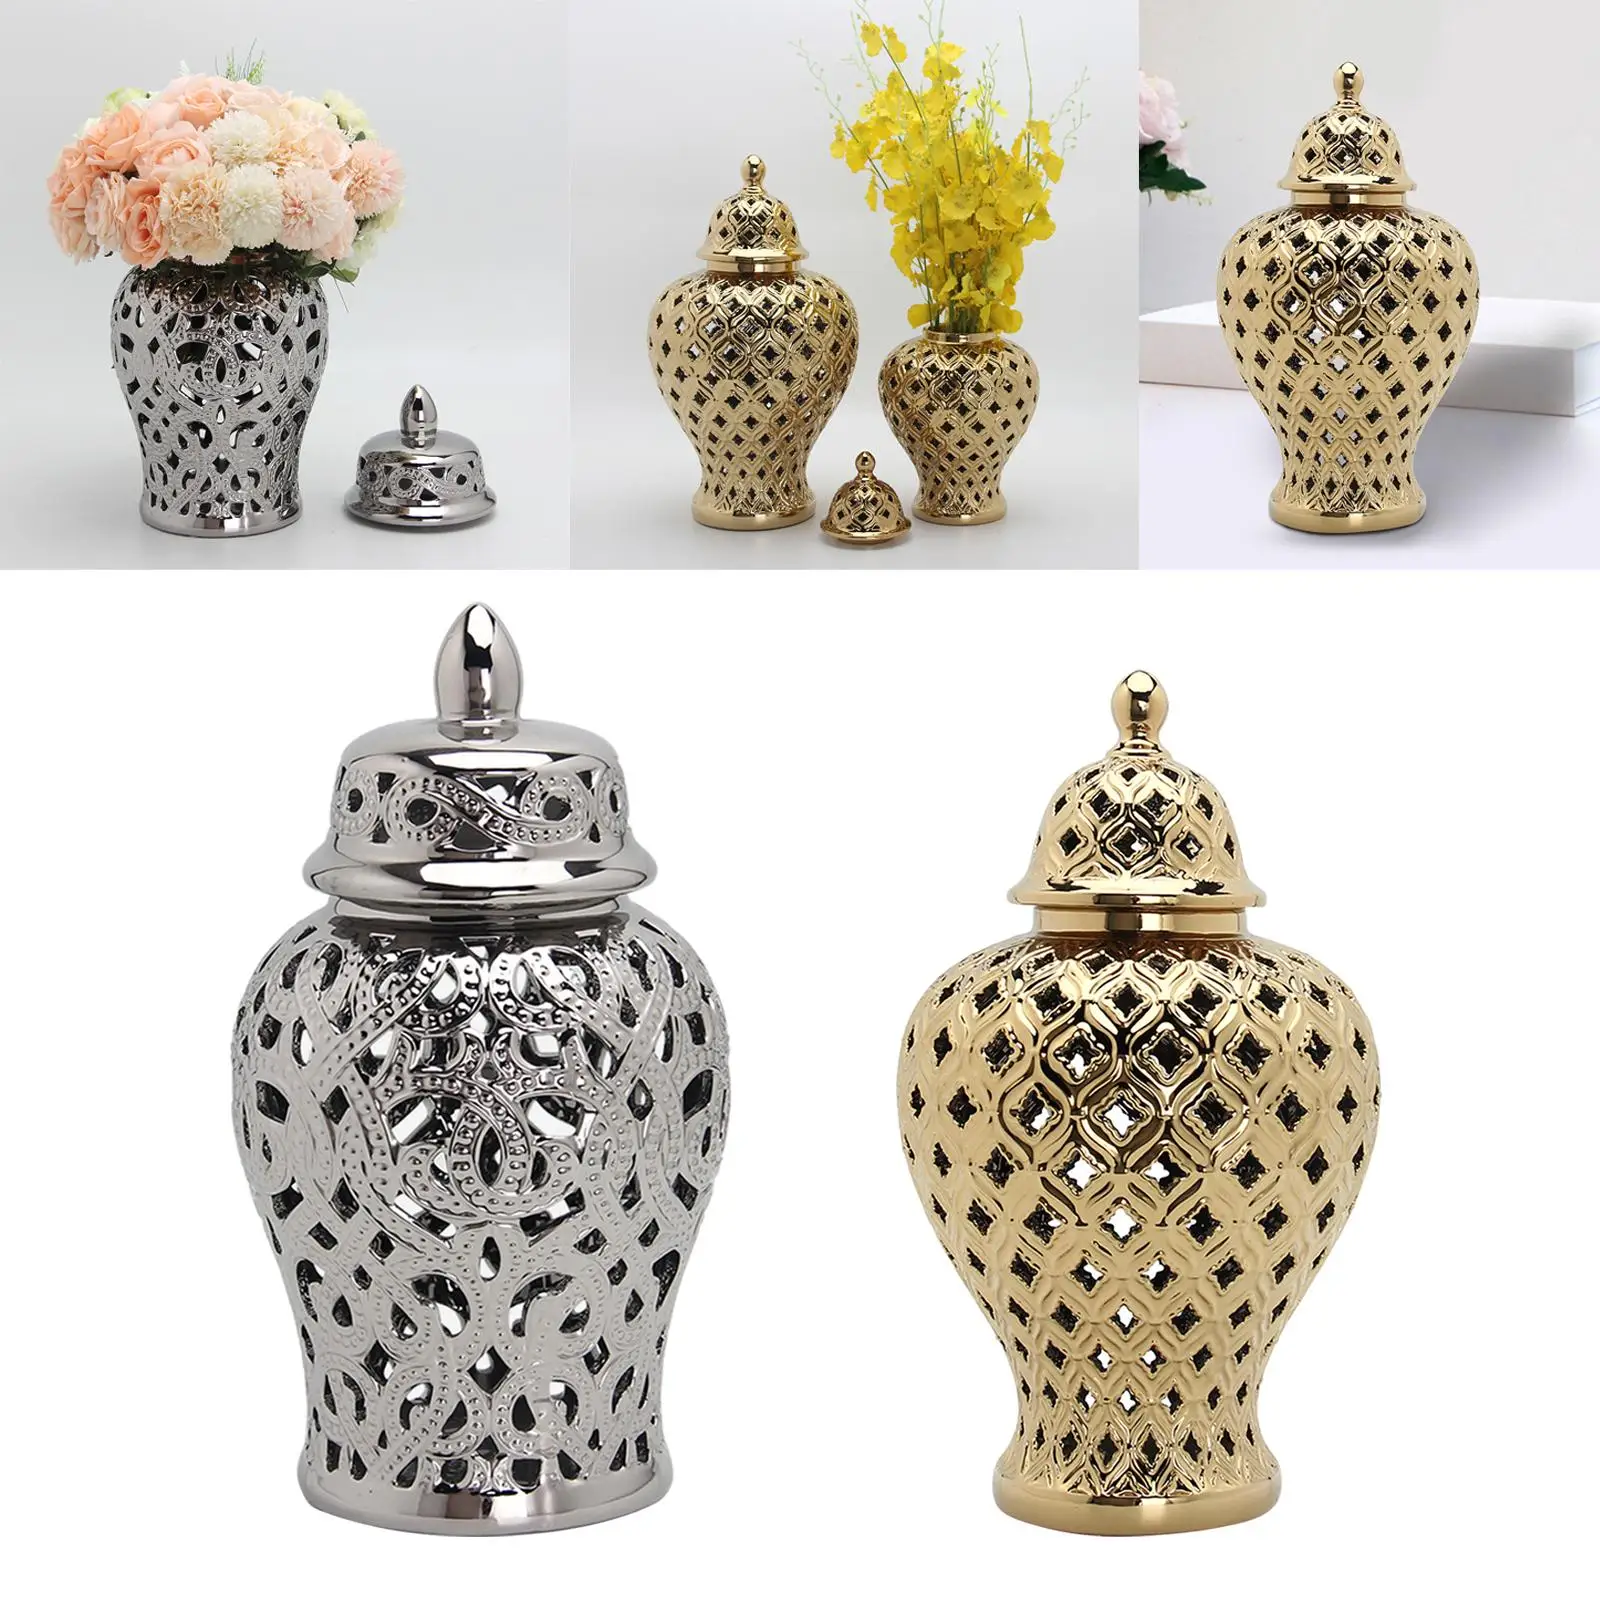 Retro Style Ceramic Ginger Jar Storage Decor with Lid Display Vase for Flower Arrangement Desktop Living Room Gift Decoration